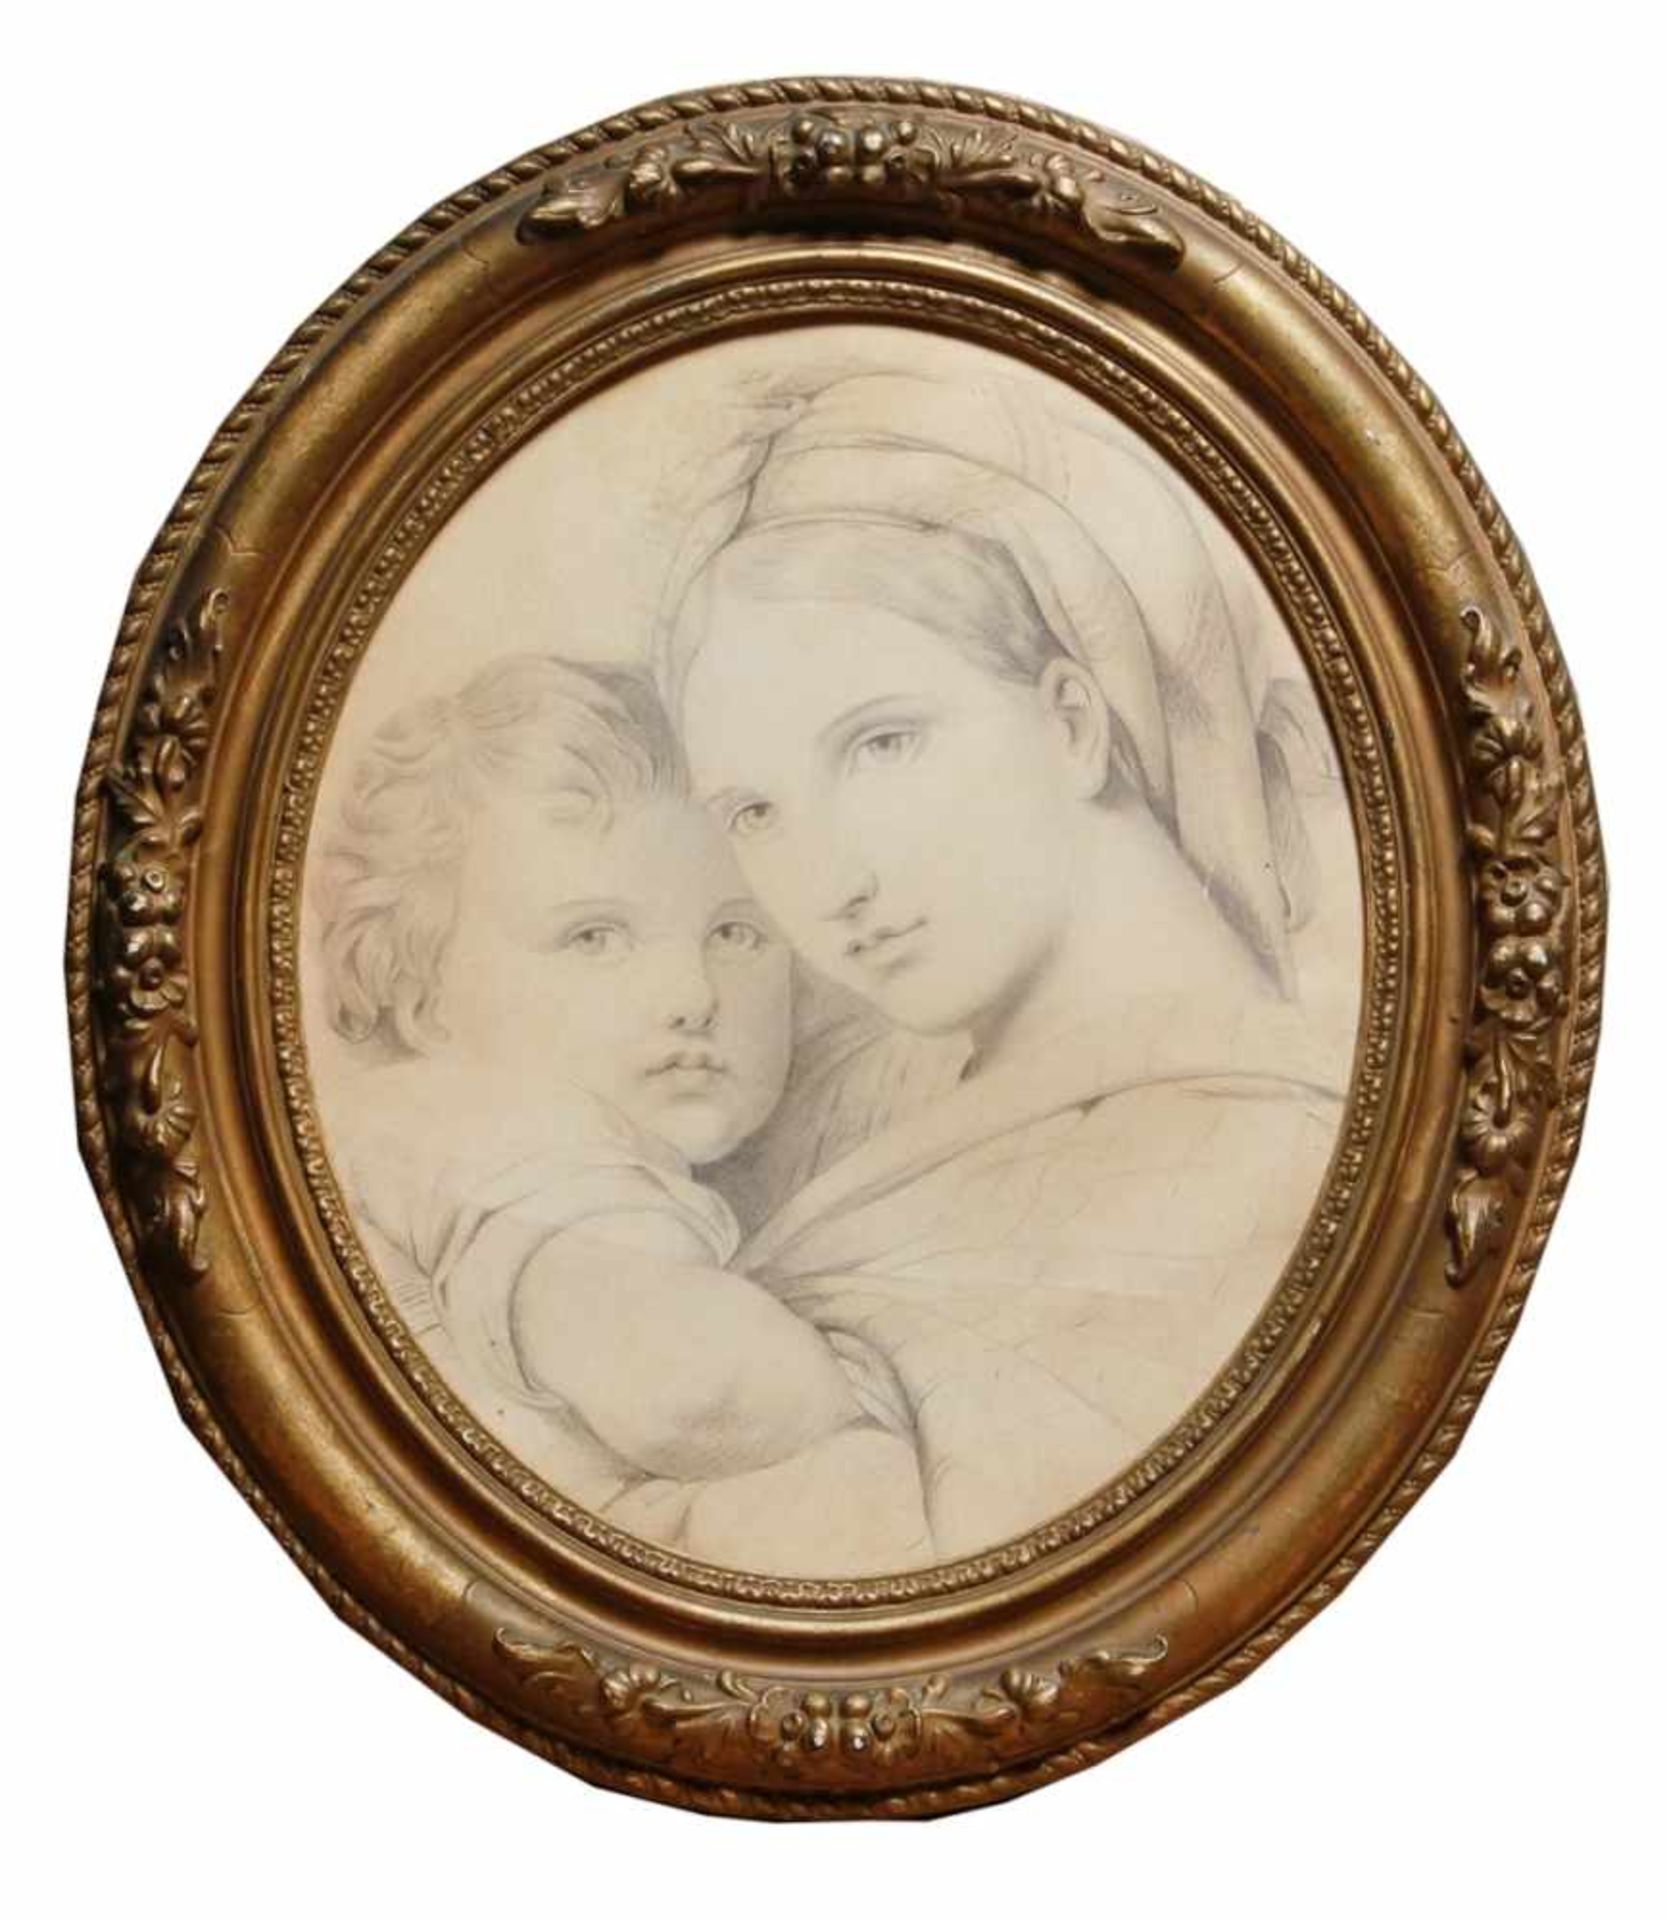 Anonymer Maler, 19. Jh. "Mutter mit Kind", Bleistiftzeichnung, oval, 31 x 27 cm- - -20.00 % buyer'